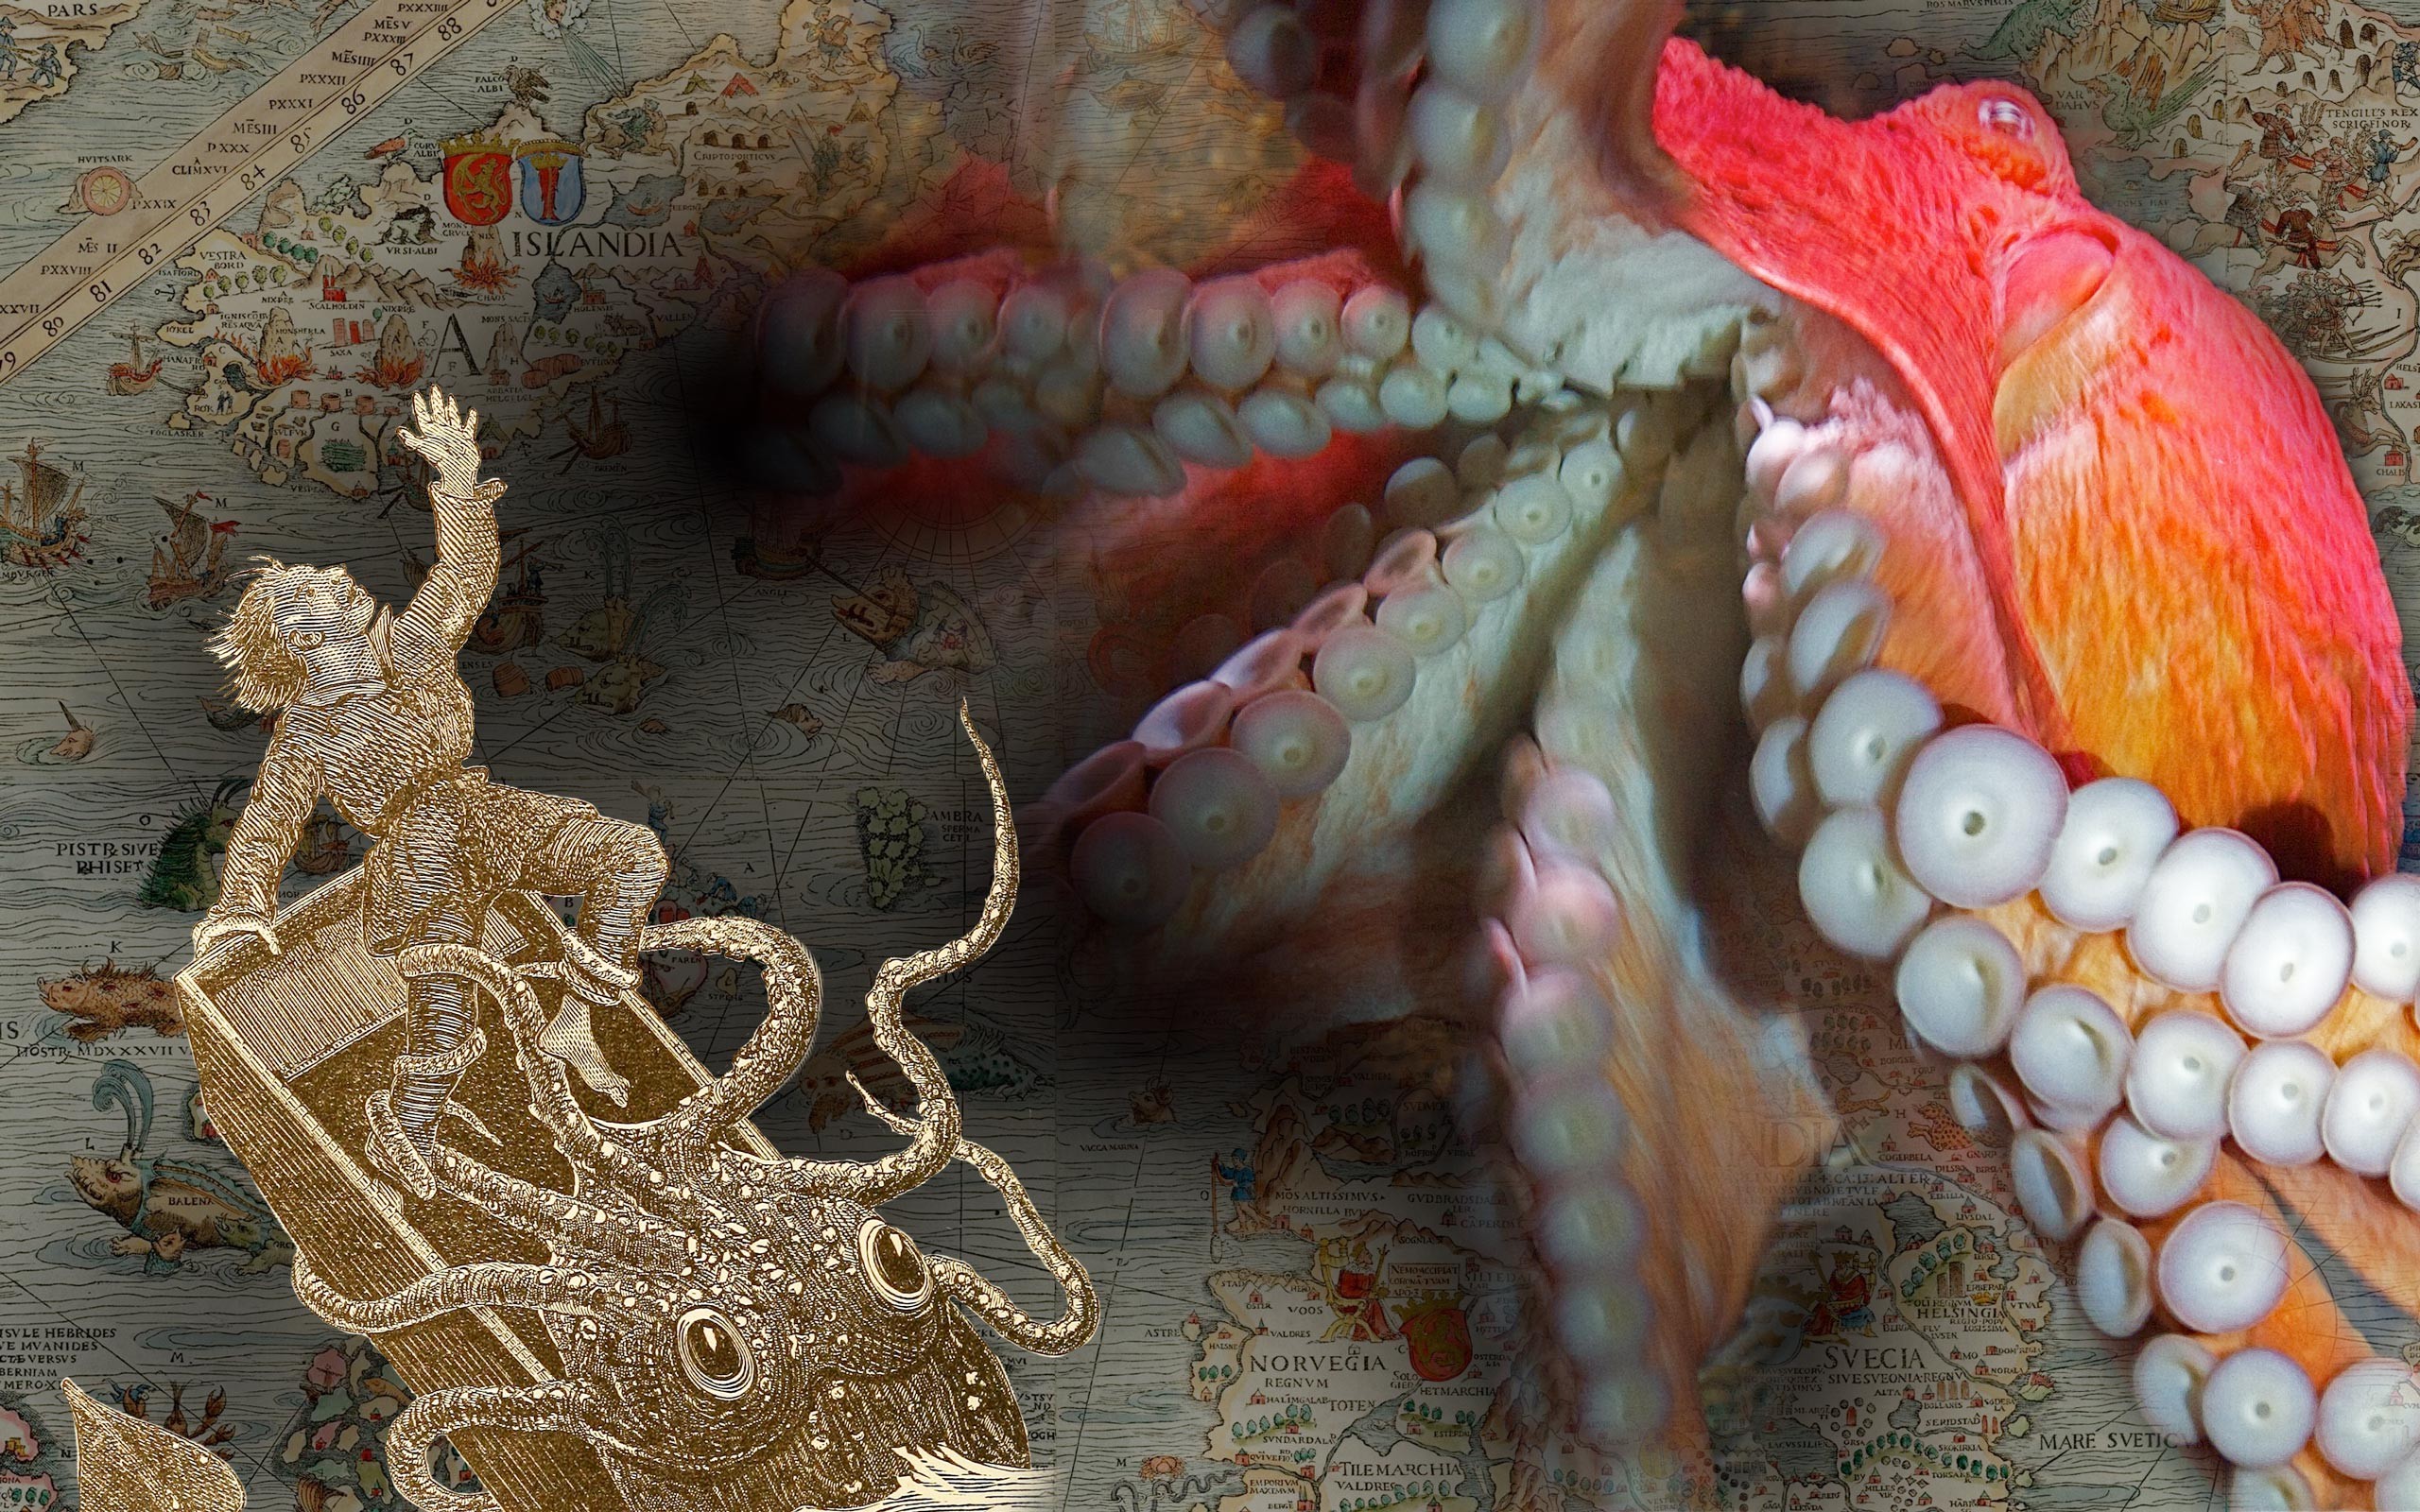 Кракен поднимается: Вымышленные и реальные чудовища из морских глубин